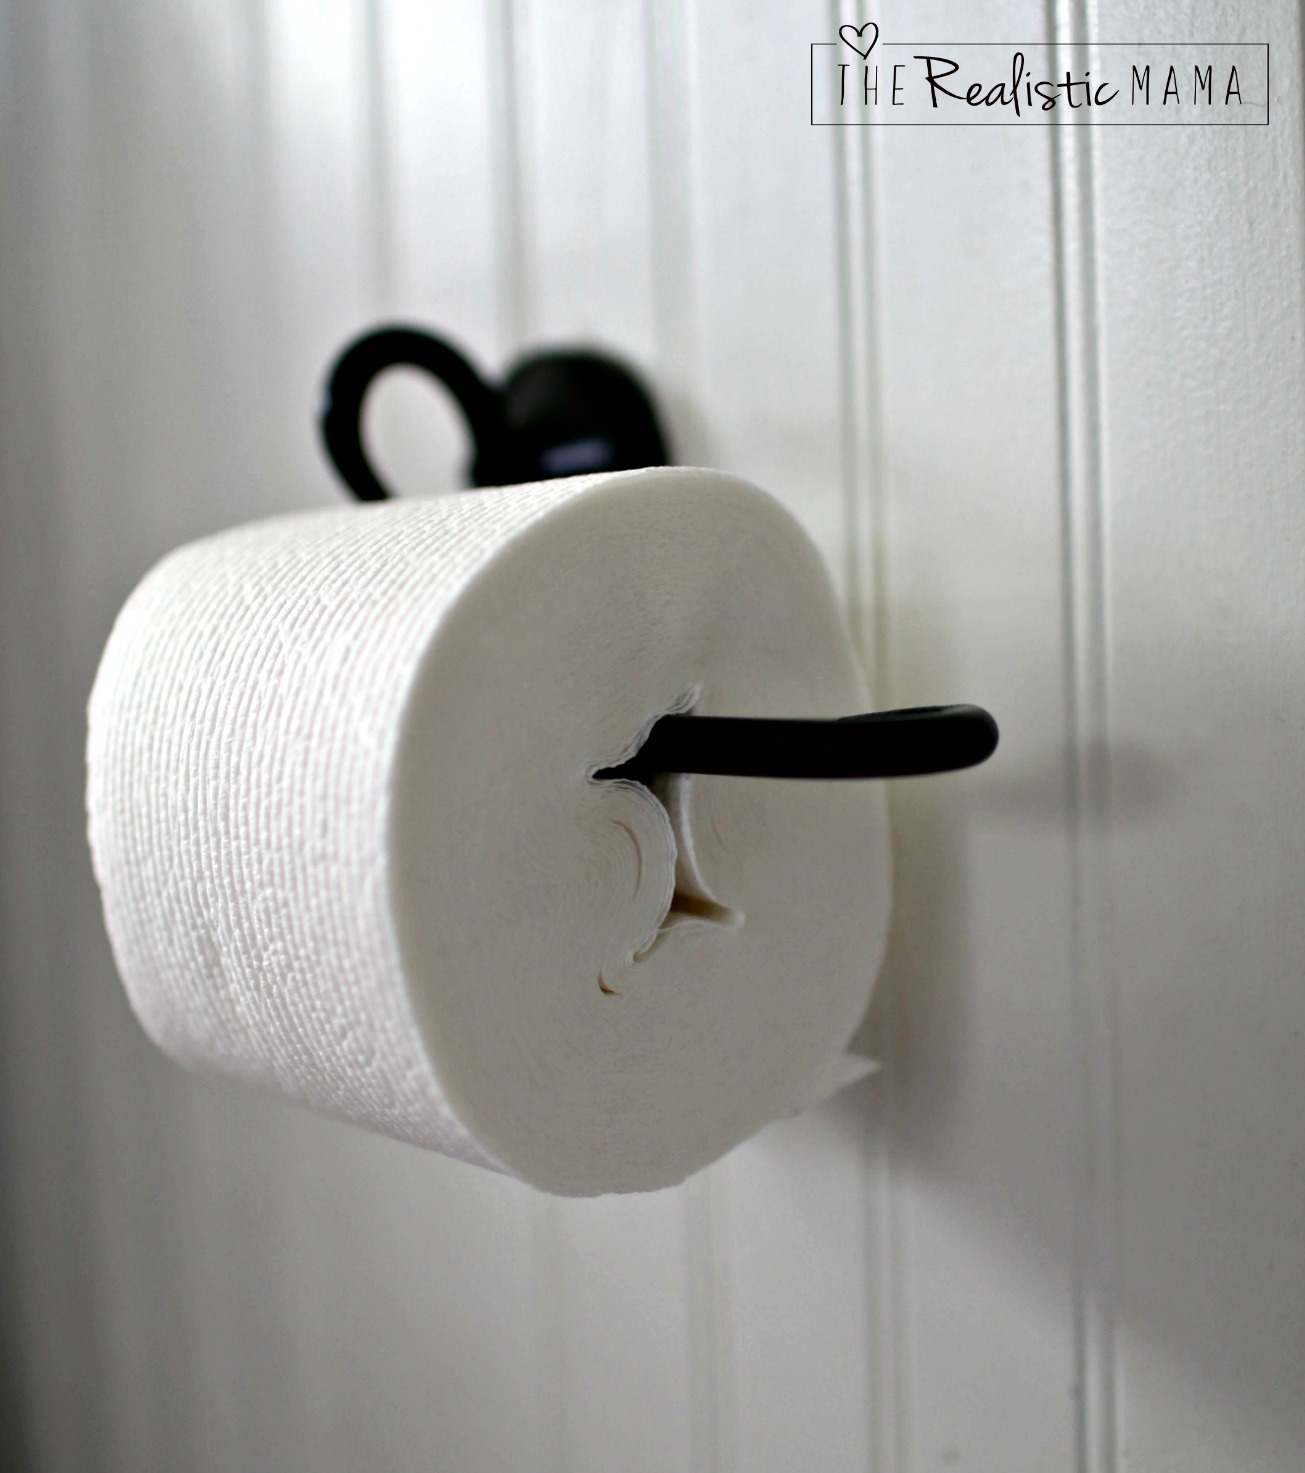 Tube-Free toilet paper